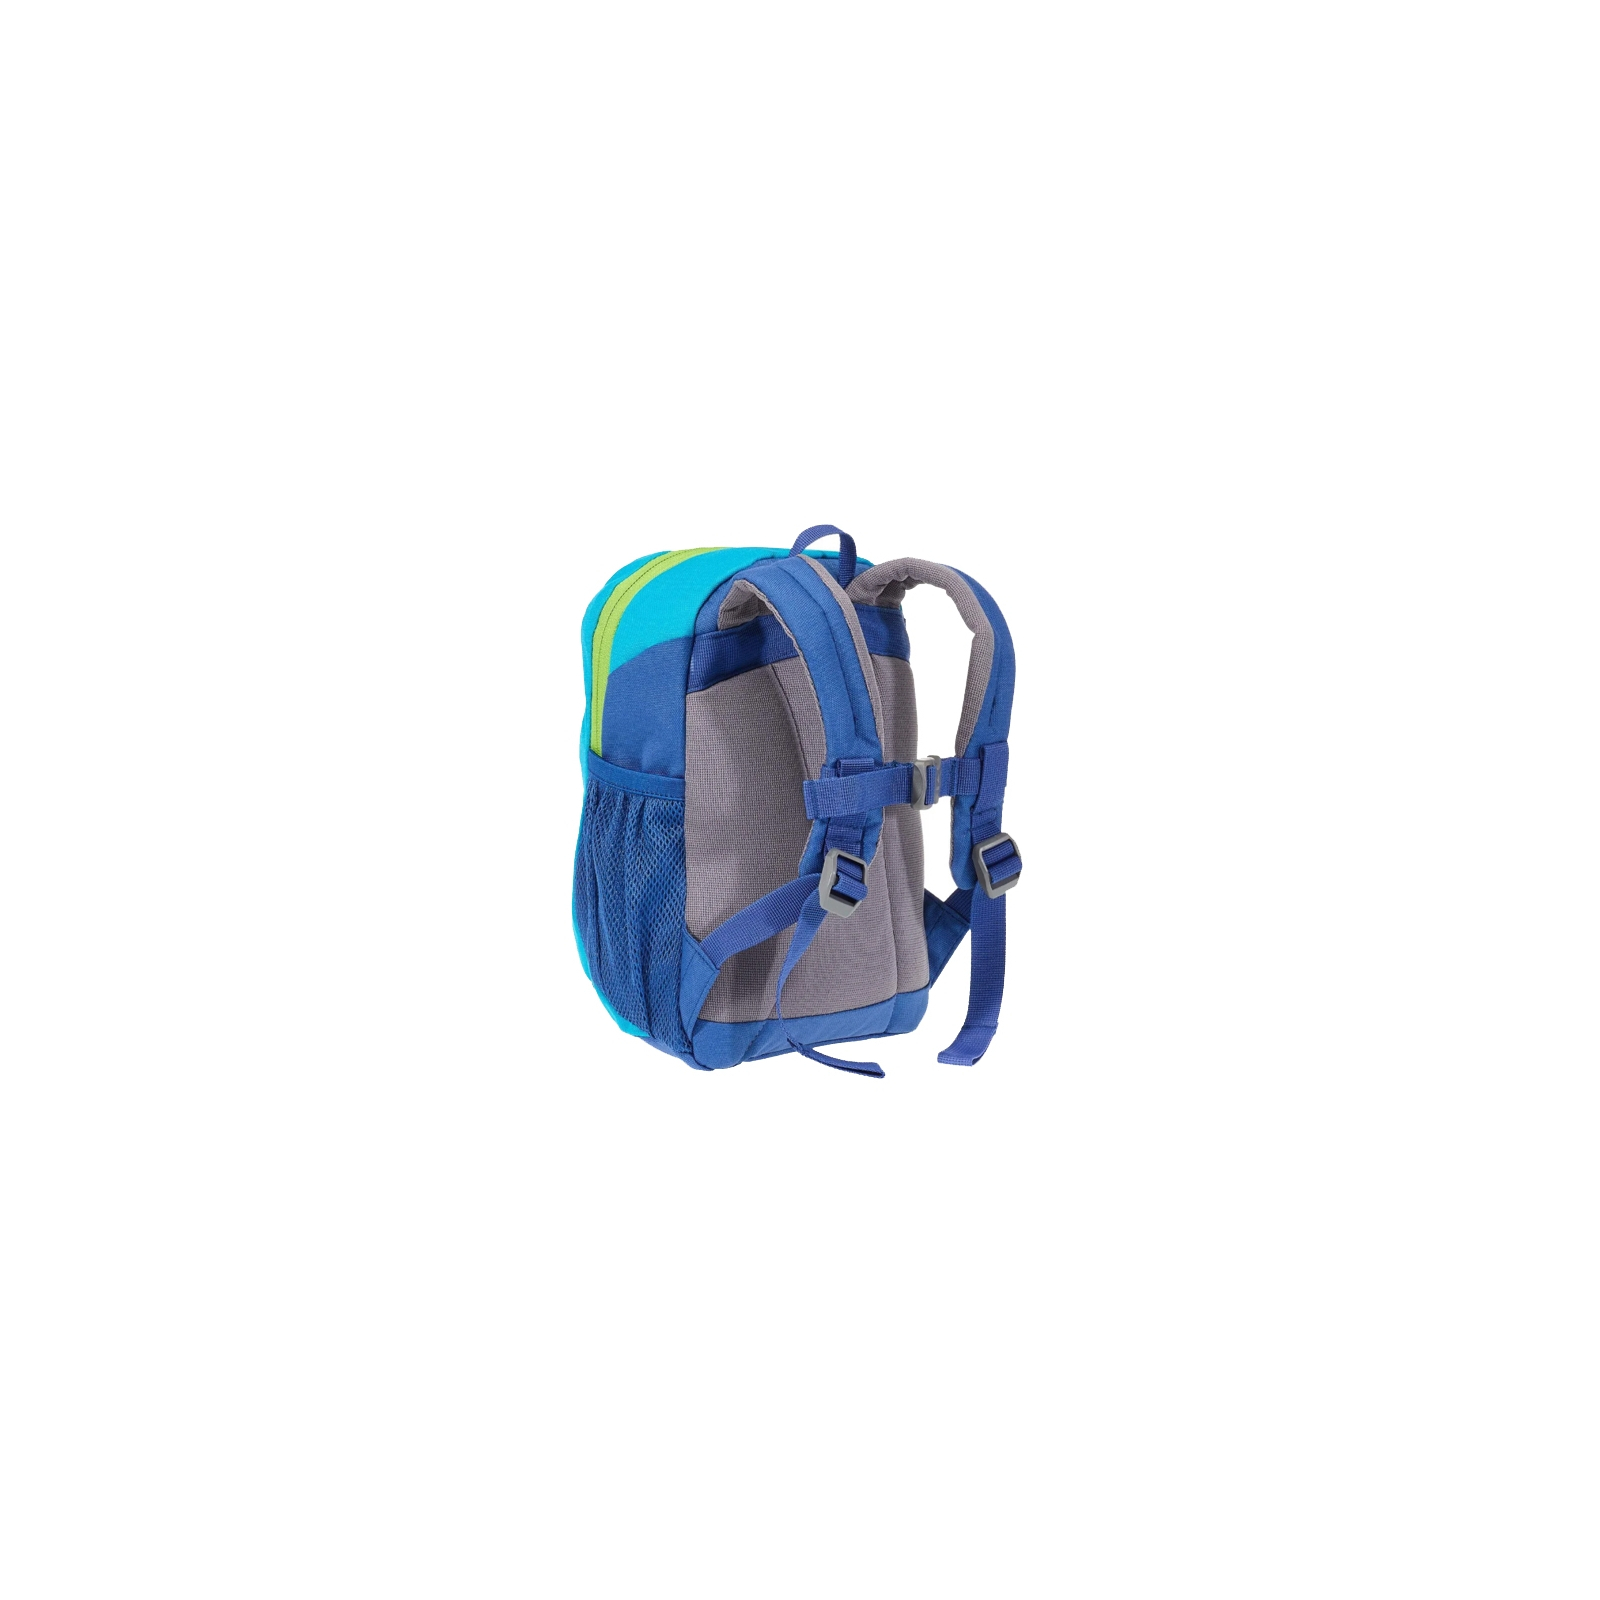 Рюкзак школьный Deuter Pico 3391 indigo-turquoise (36043 3391) изображение 3